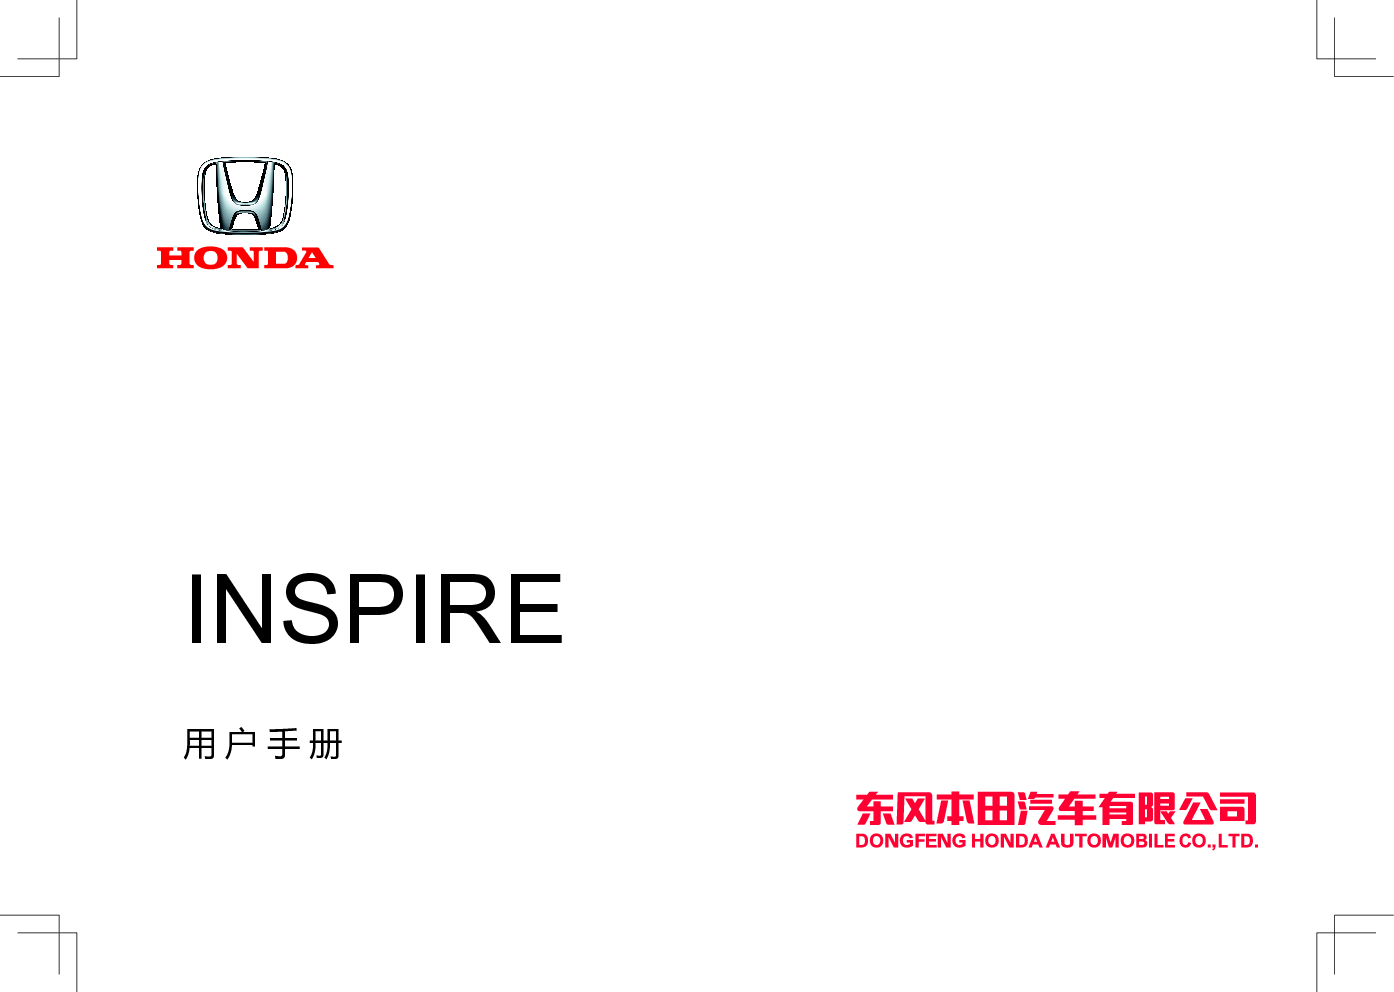 本田 Honda INSPIRE 2021 用户手册 封面